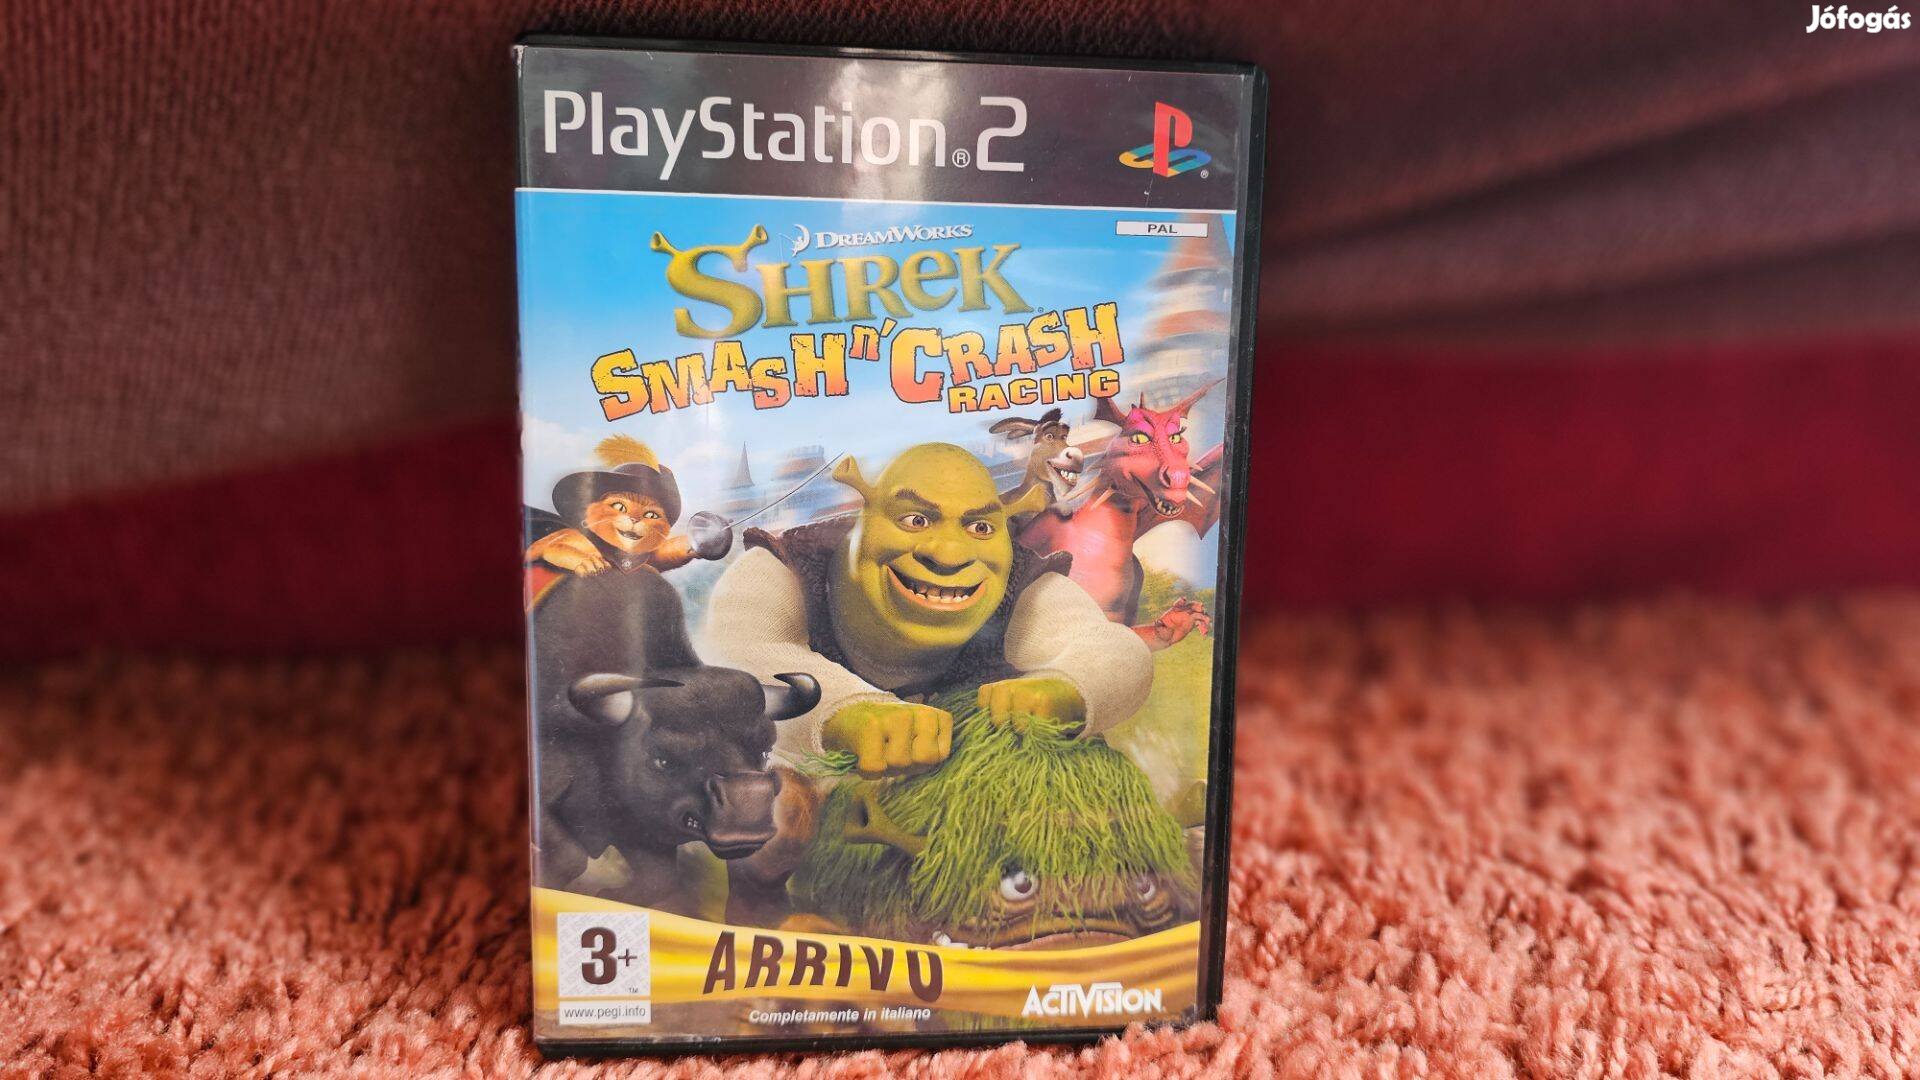 Shrek Smash N' Crash Racing (PS2, Playstation 2) Játék